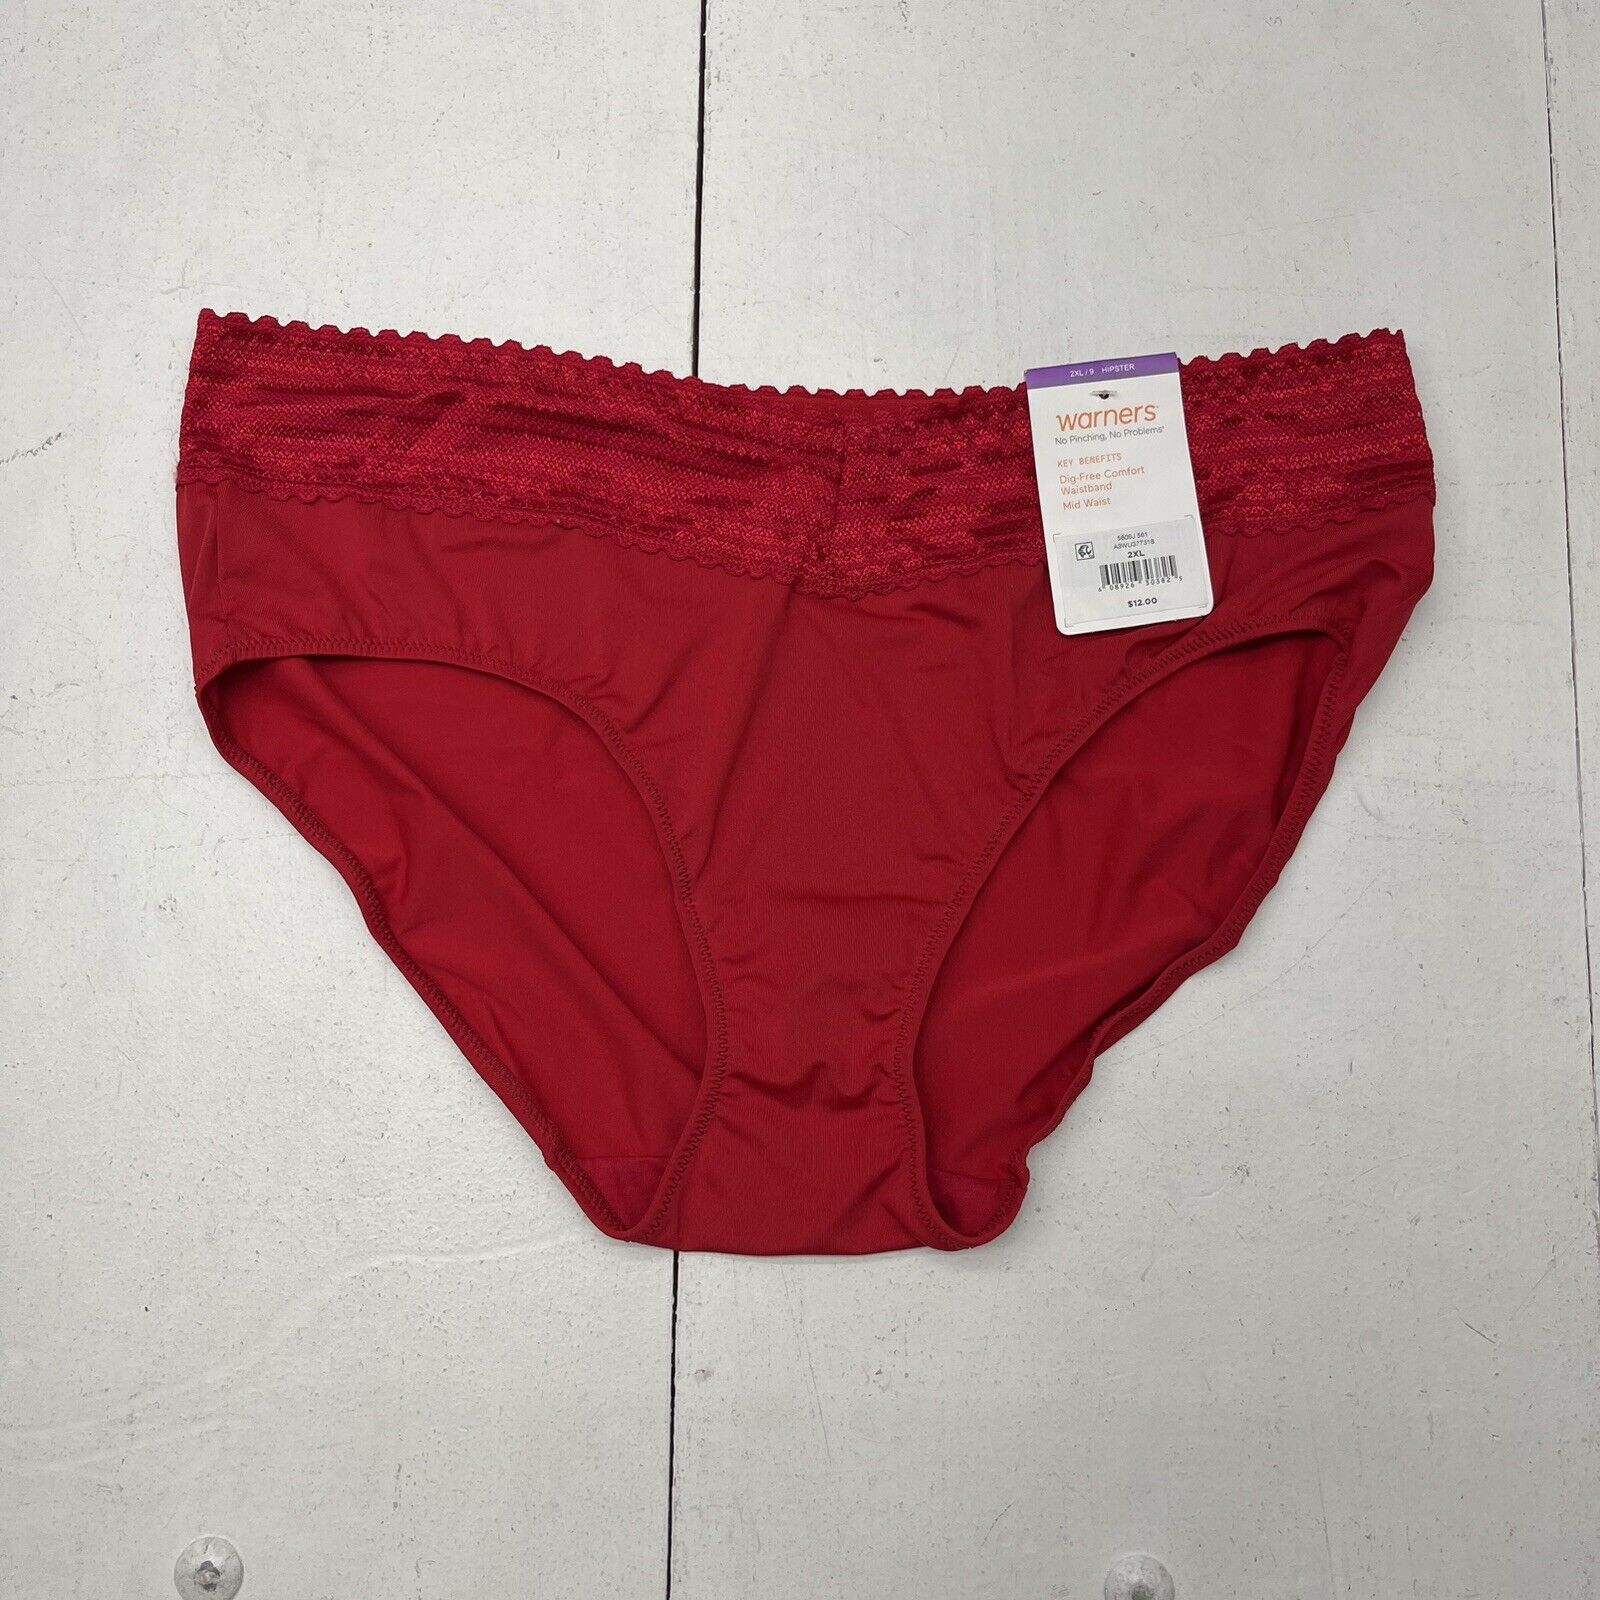  Women's Panties - Warner's / Women's Panties / Women's